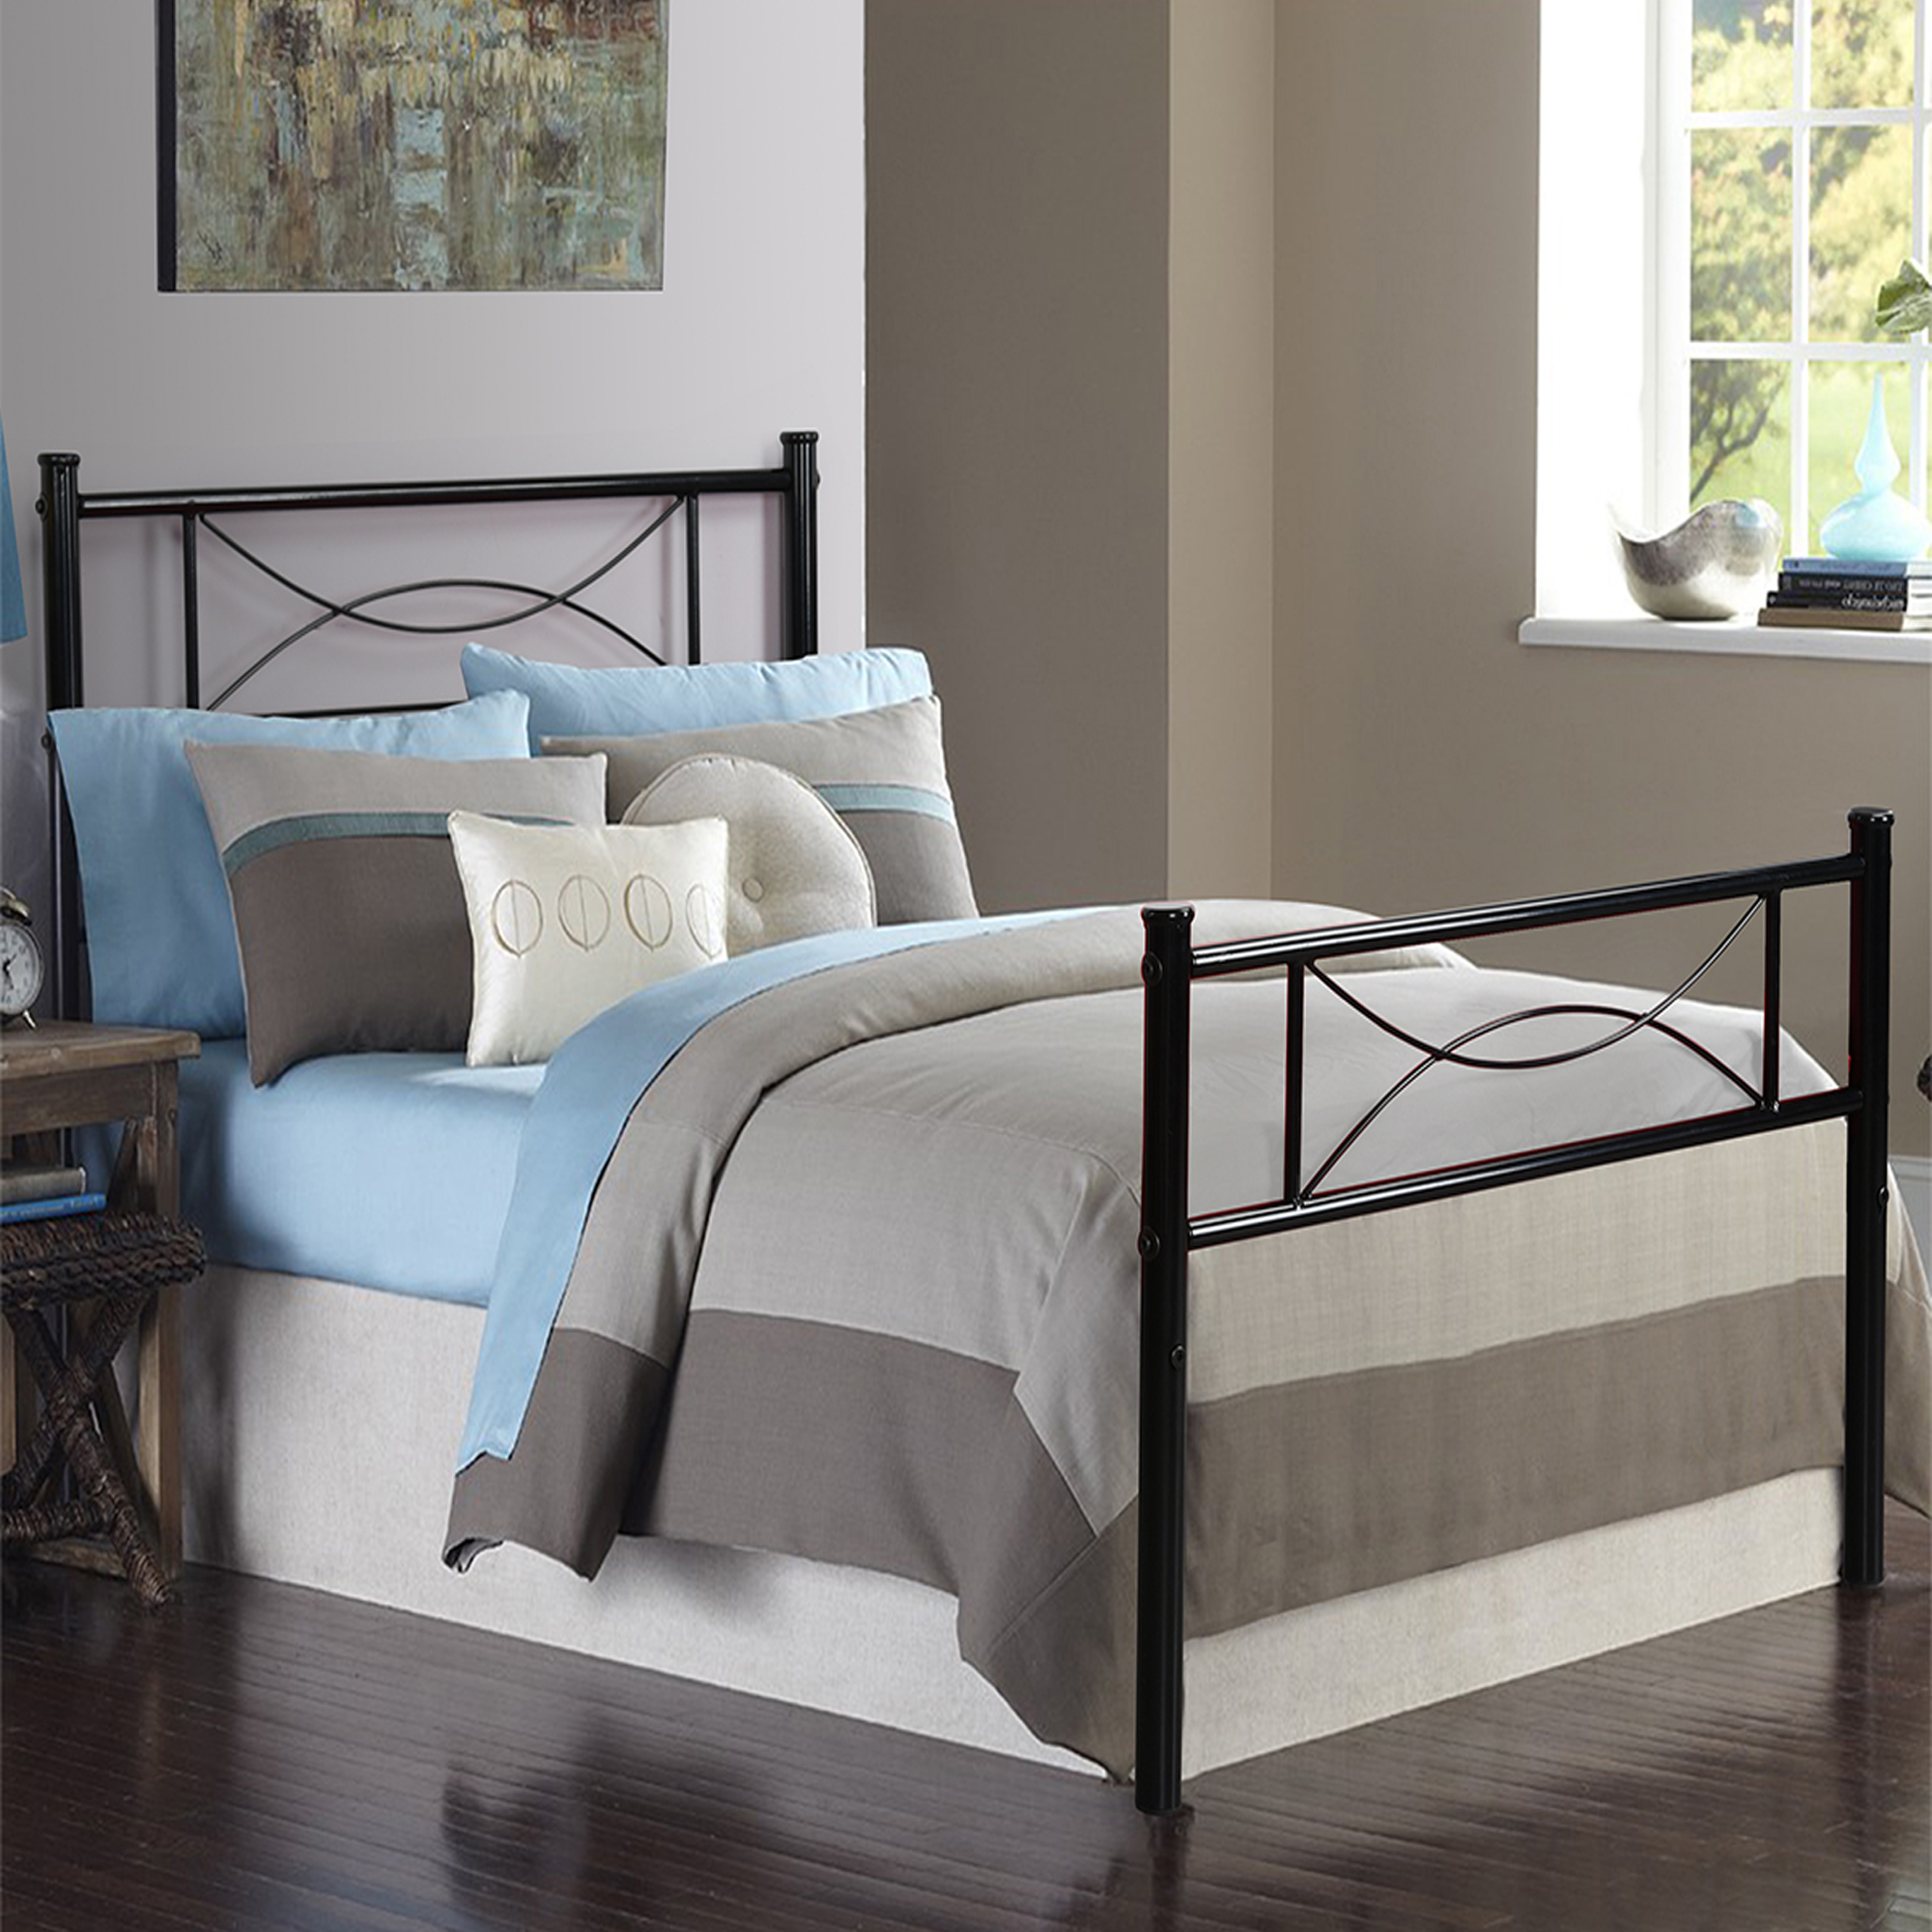 Furniture R Bedroom Metal Bed Frame, Flat Bottom Bed Frame Full